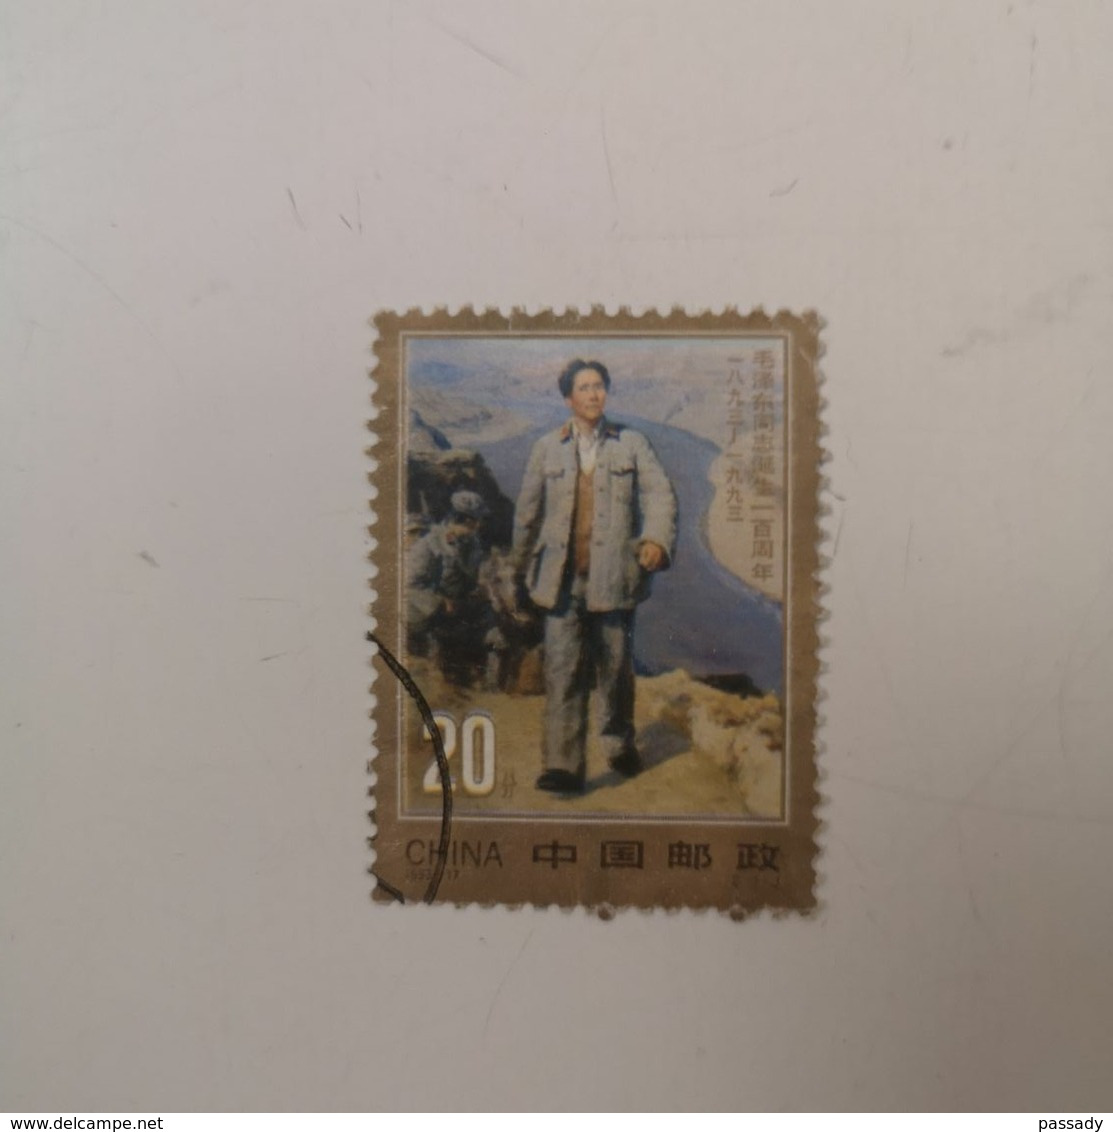 Timbre Oblitéré De Propagande D'époque MAO ZEDONG Années 50/60/70 Du Parti Communiste Chinois - Document Chine - Used Stamps